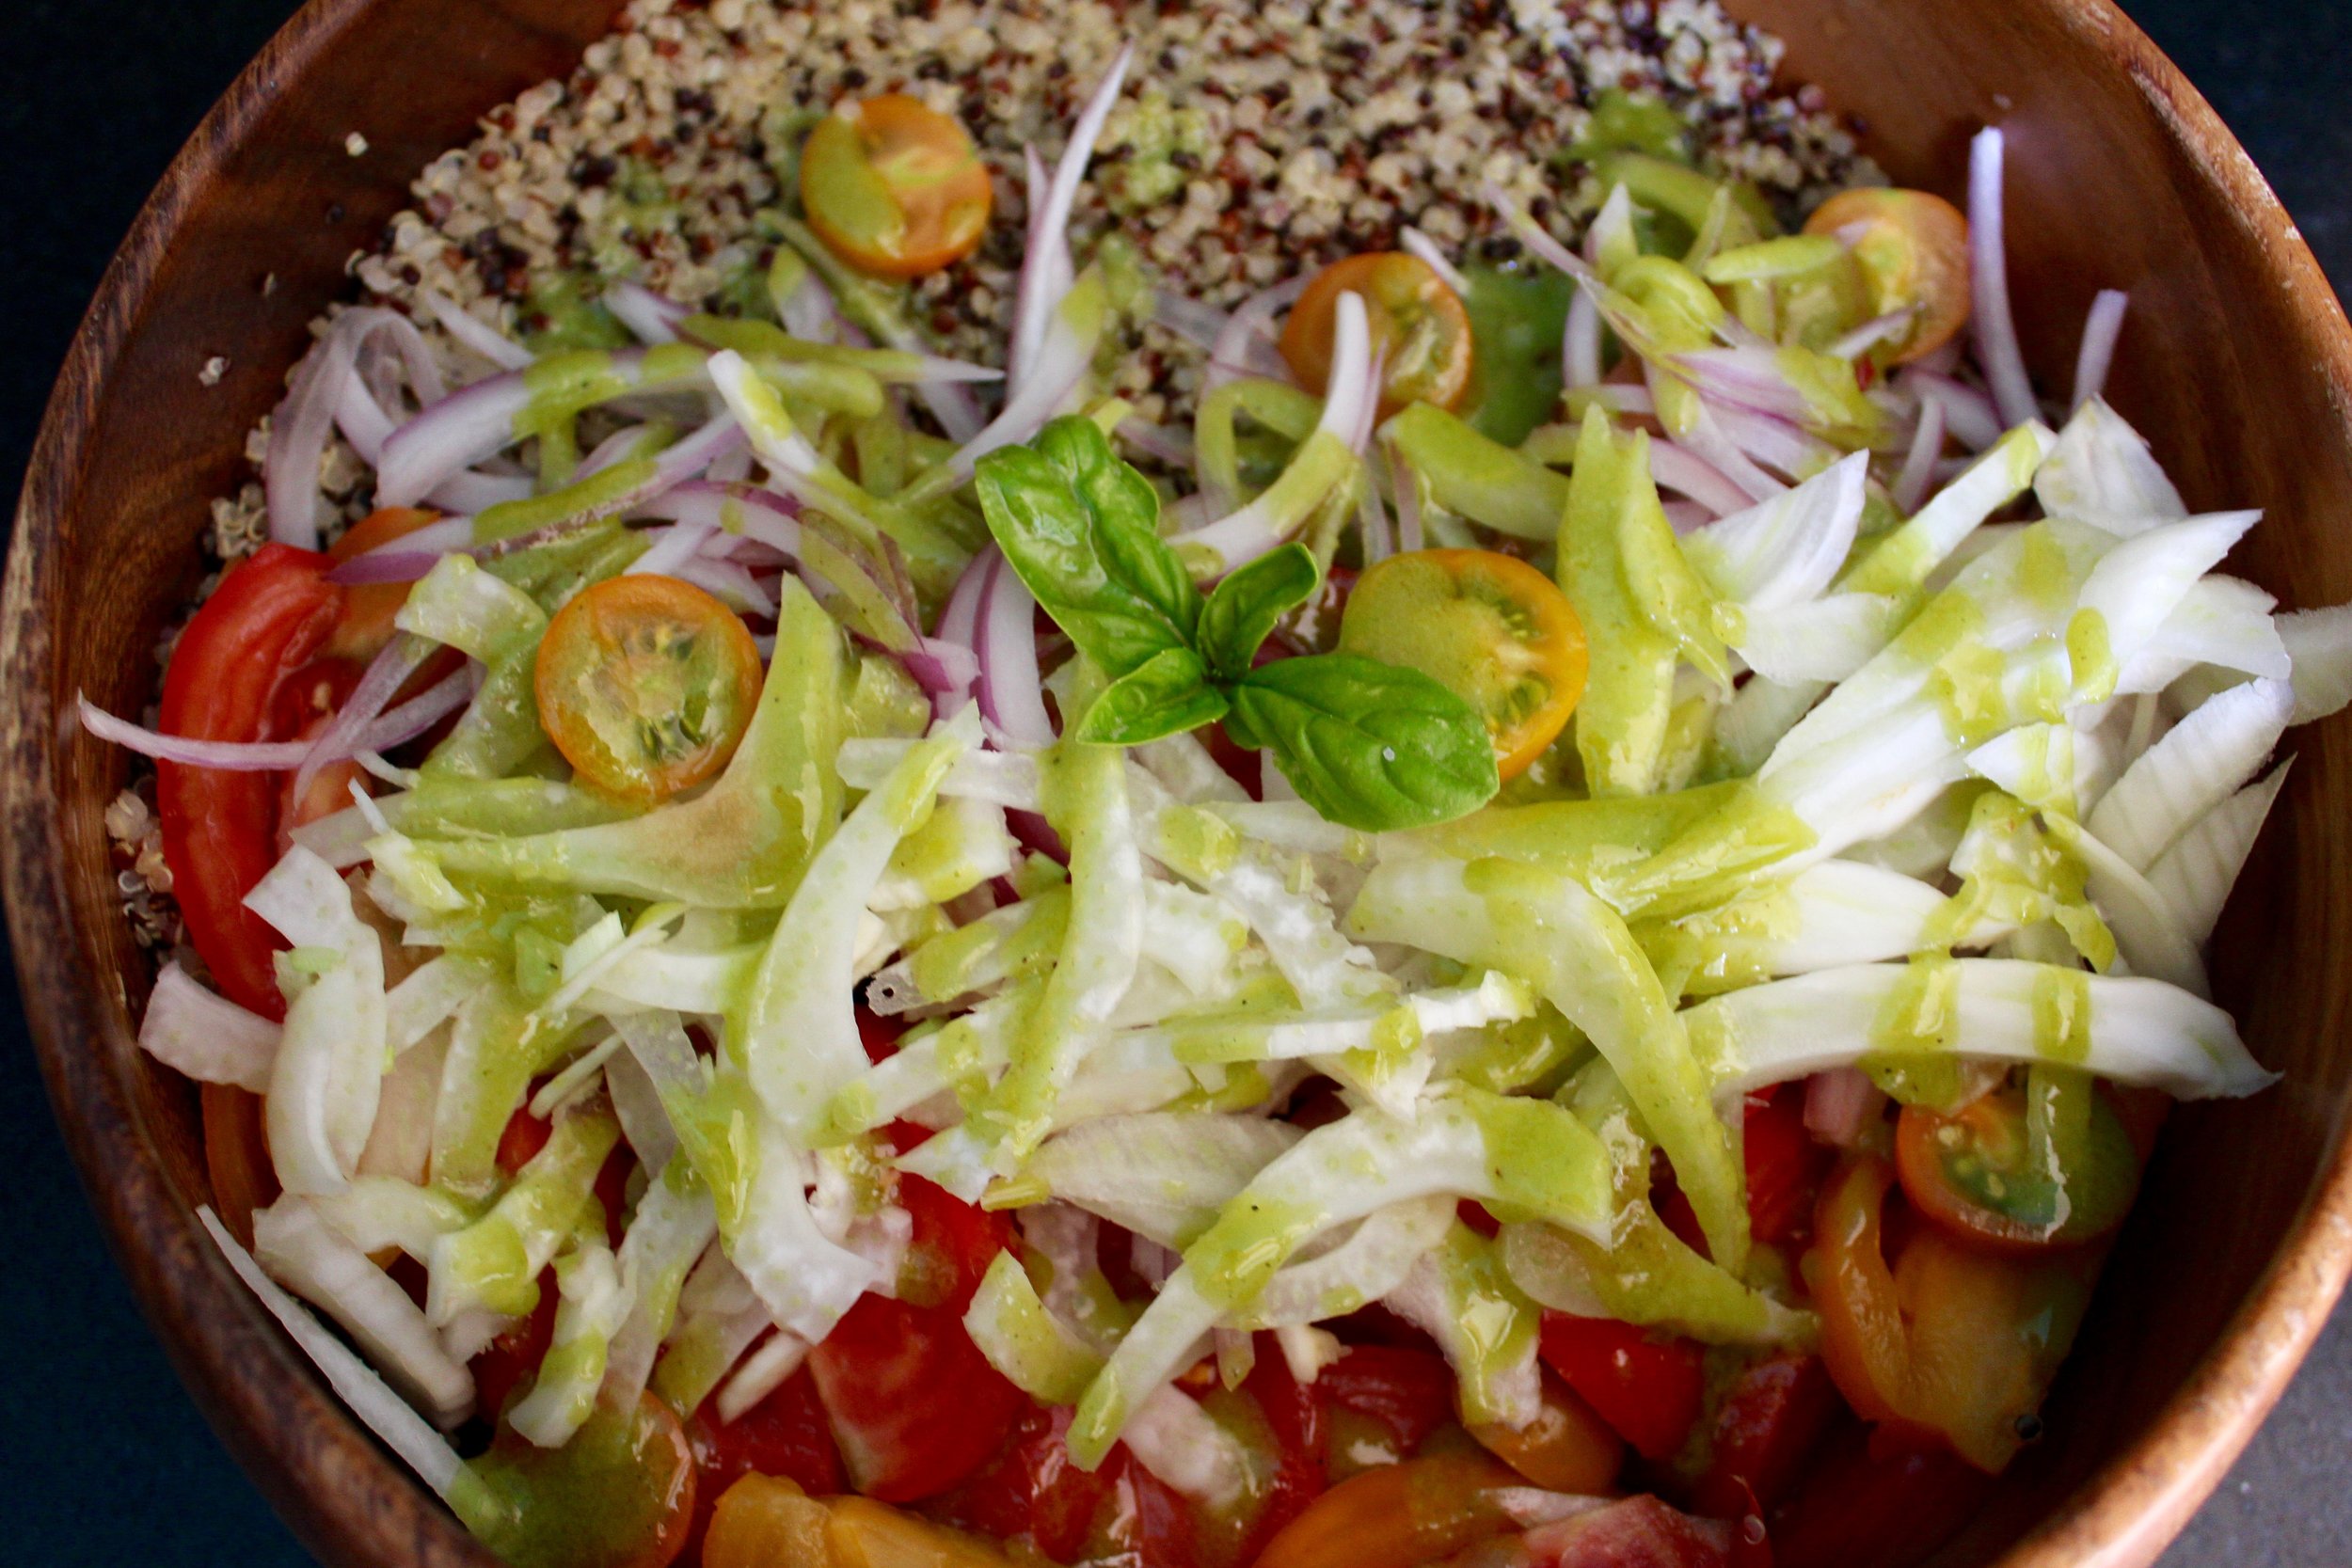 Tomato Quinoa Salad with Basil Vinaigrette